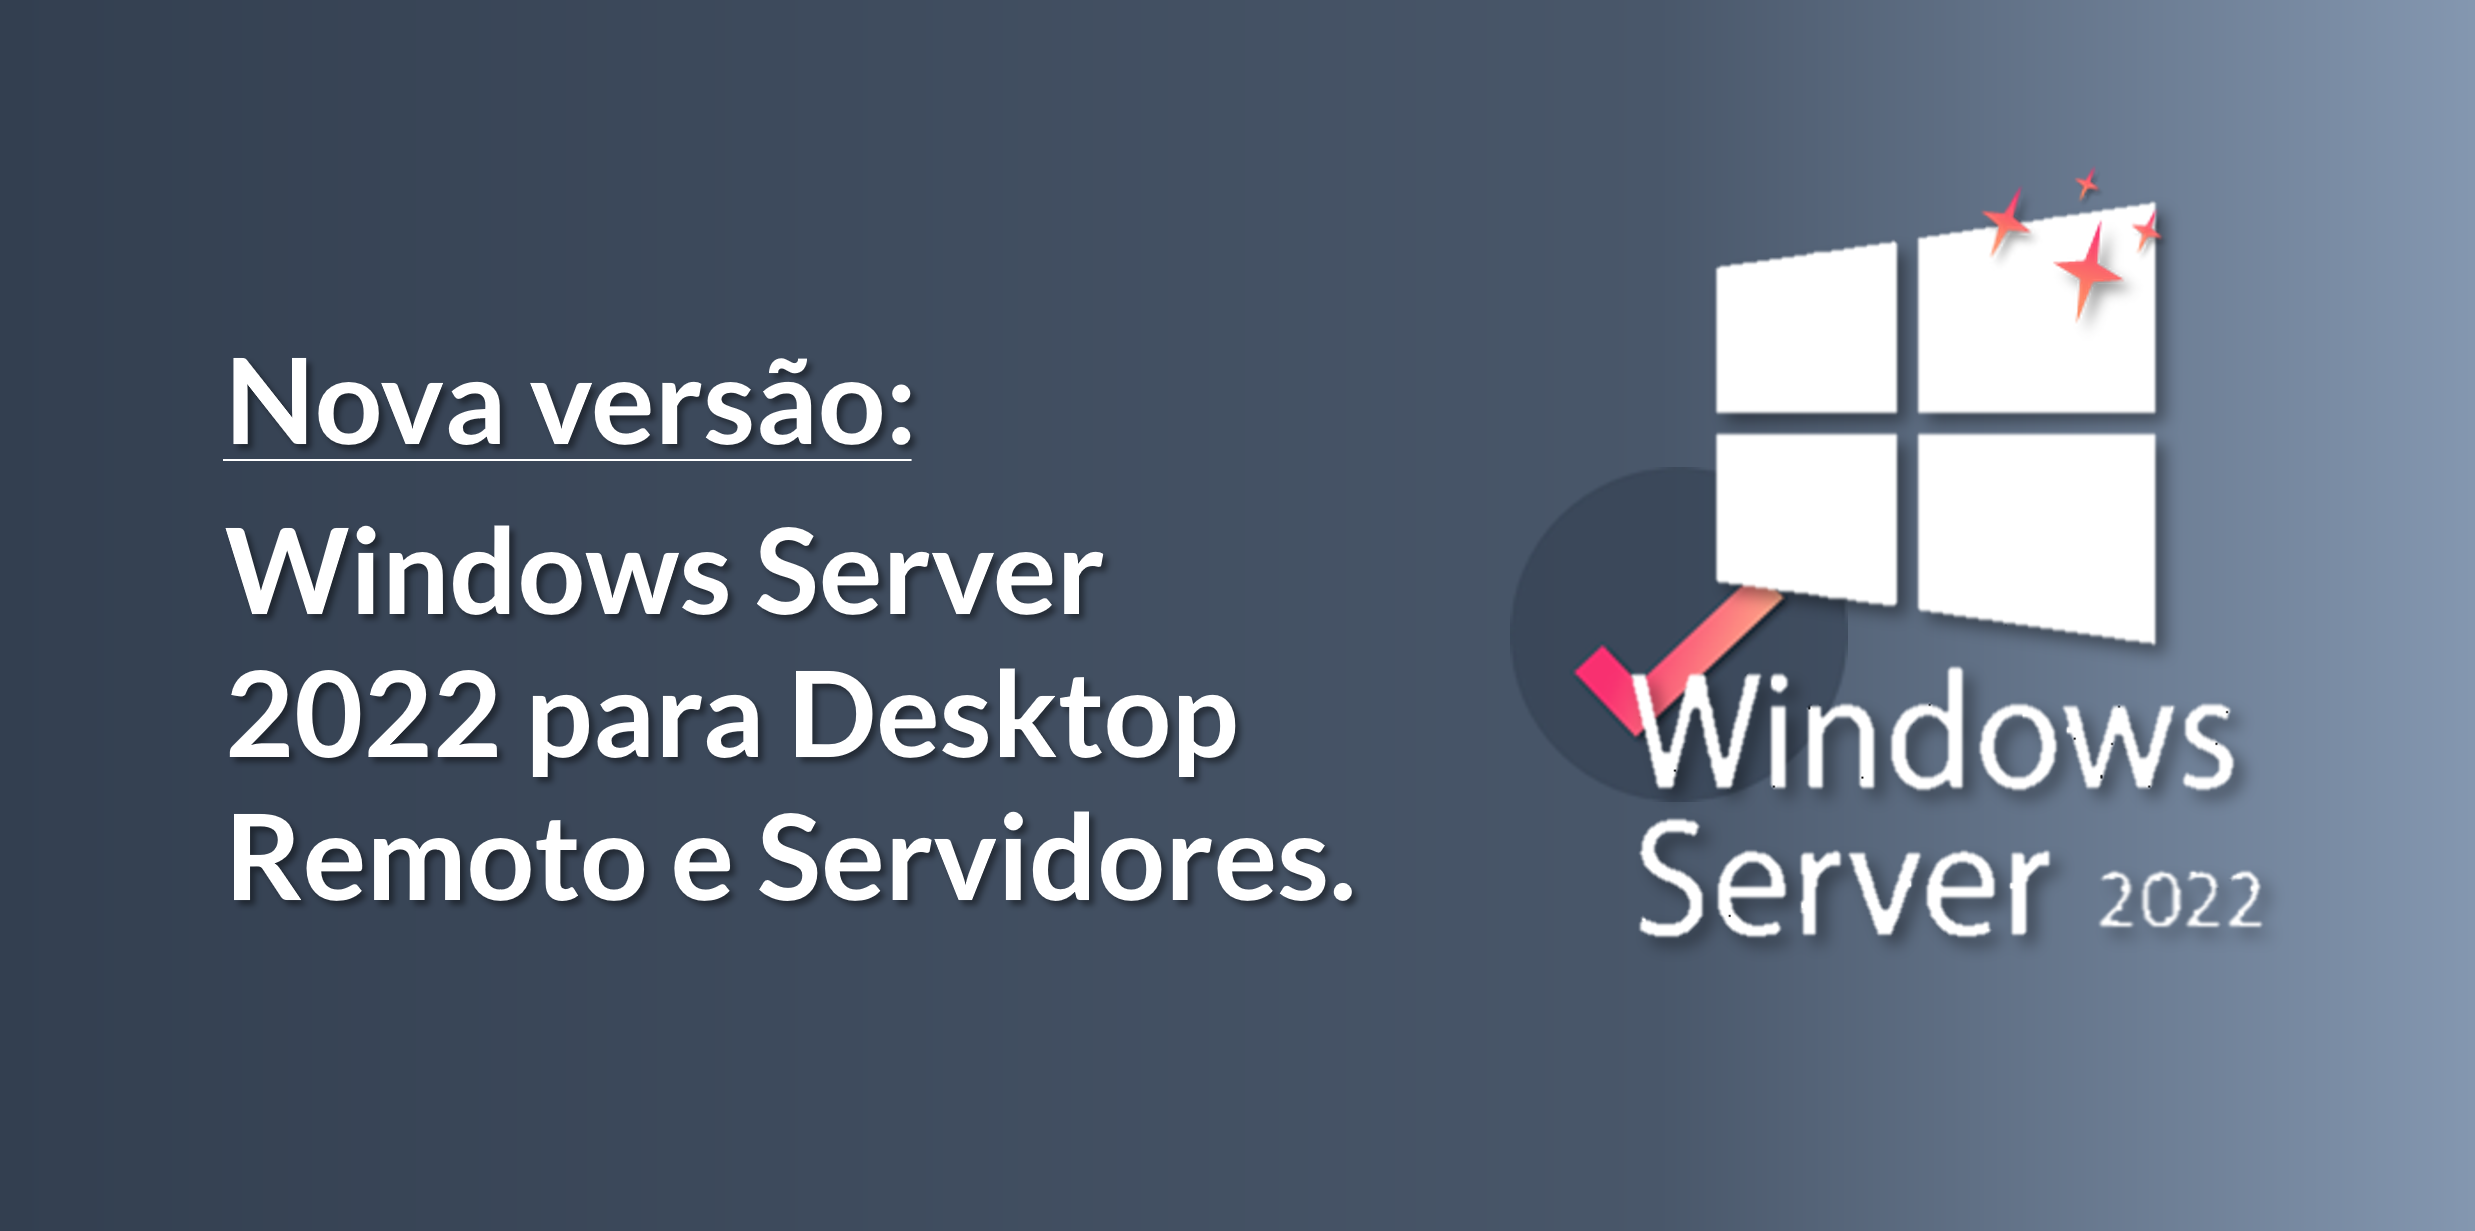 Windows Server 2022 para Desktop Remoto e Servidores